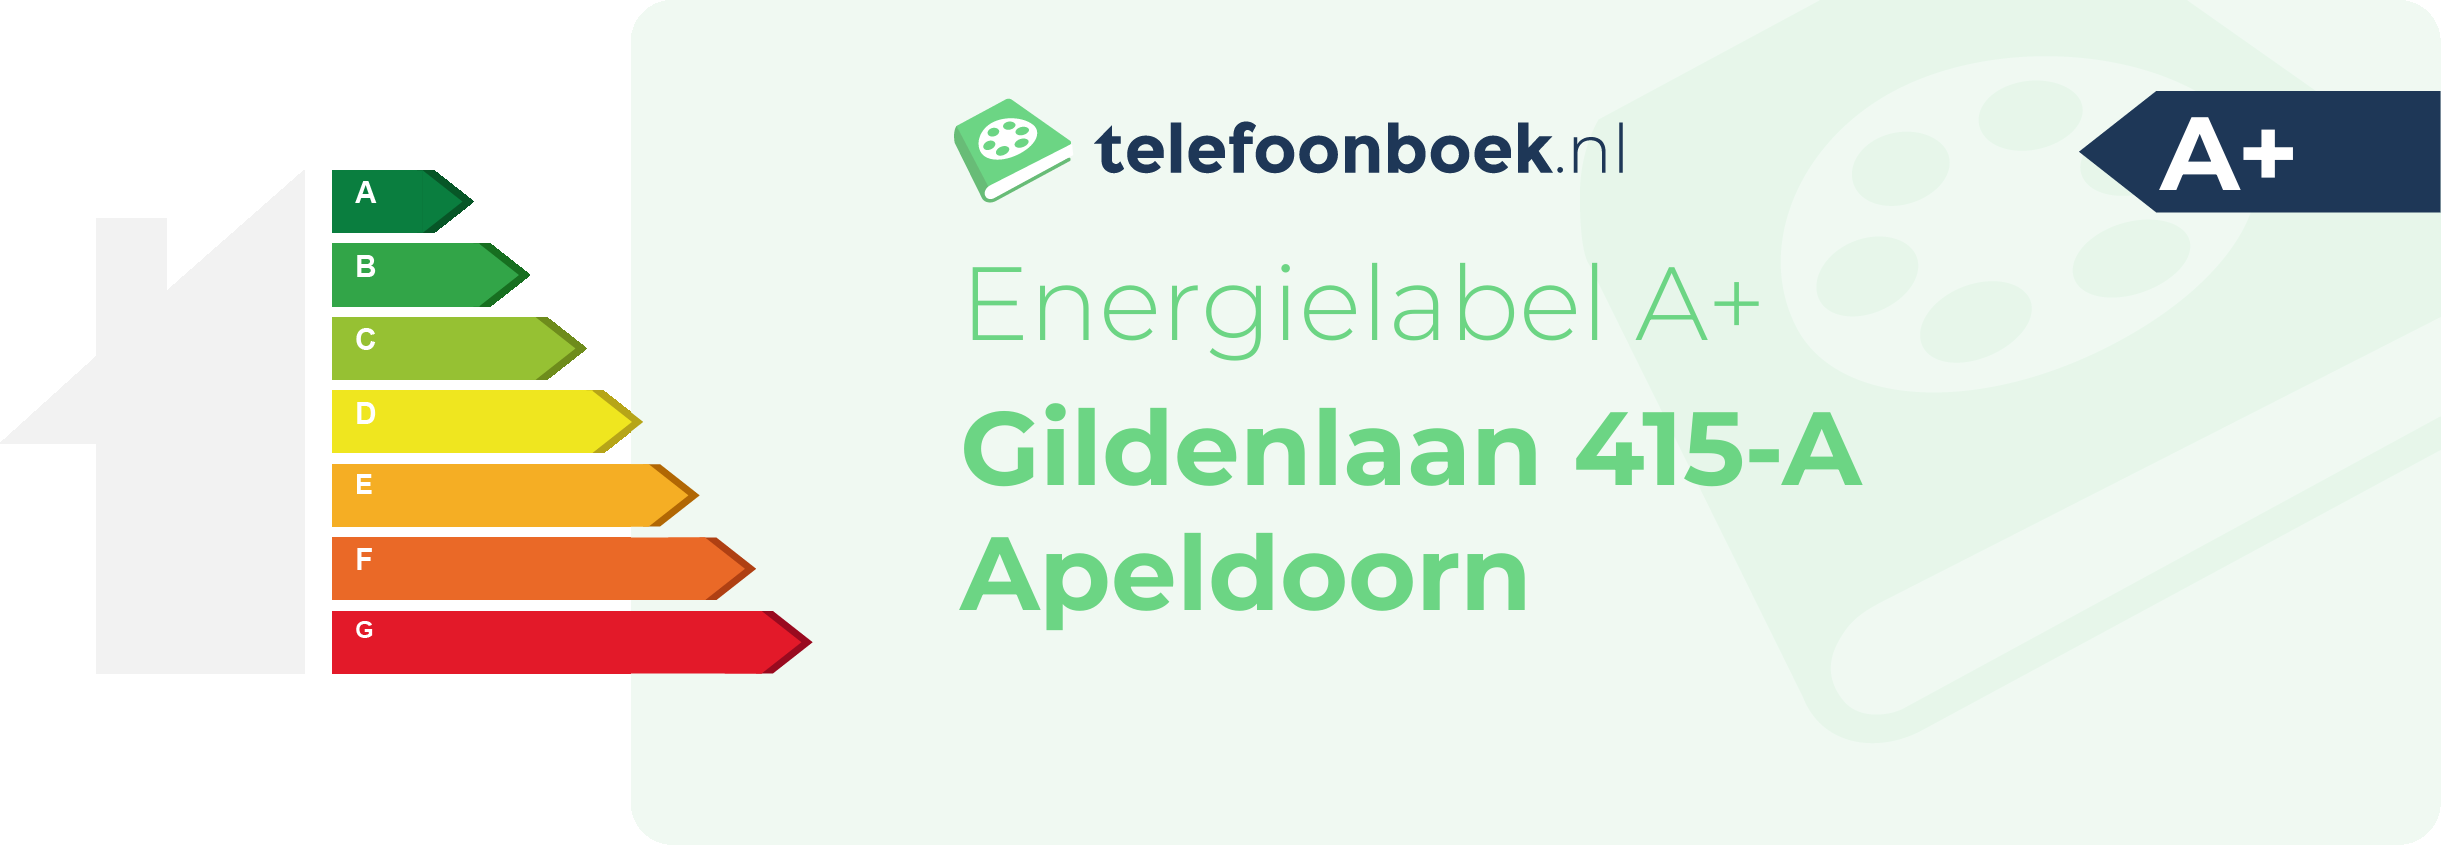 Energielabel Gildenlaan 415-A Apeldoorn